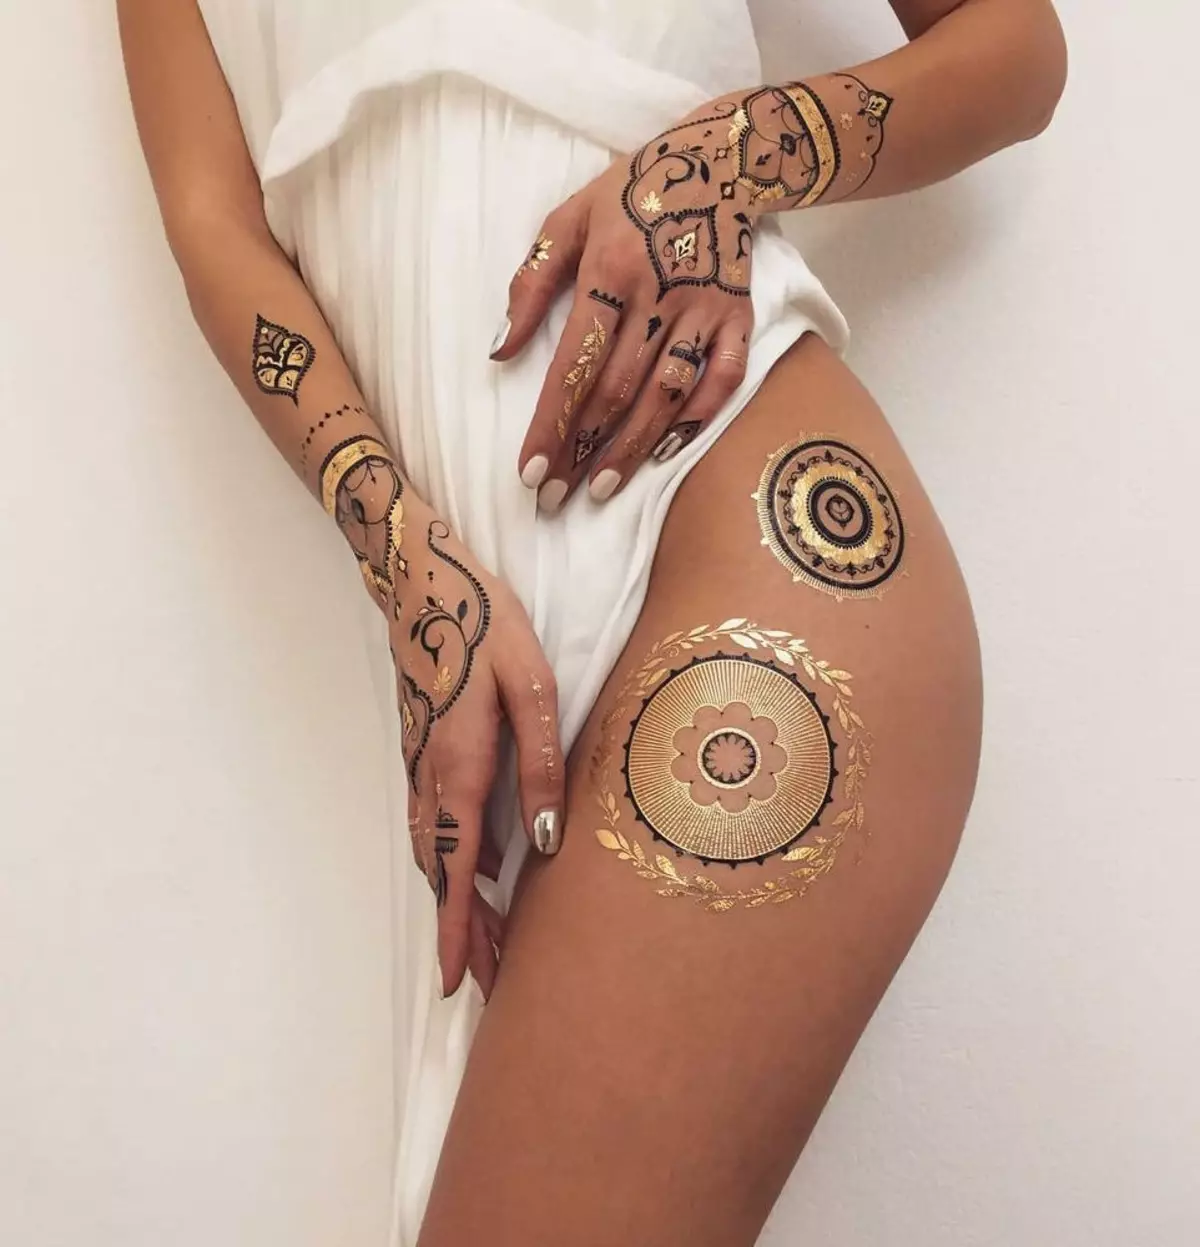 Biotat: Apa lan kepiye tato tato henna lan cemlorot? Kepiye carane? 291_19